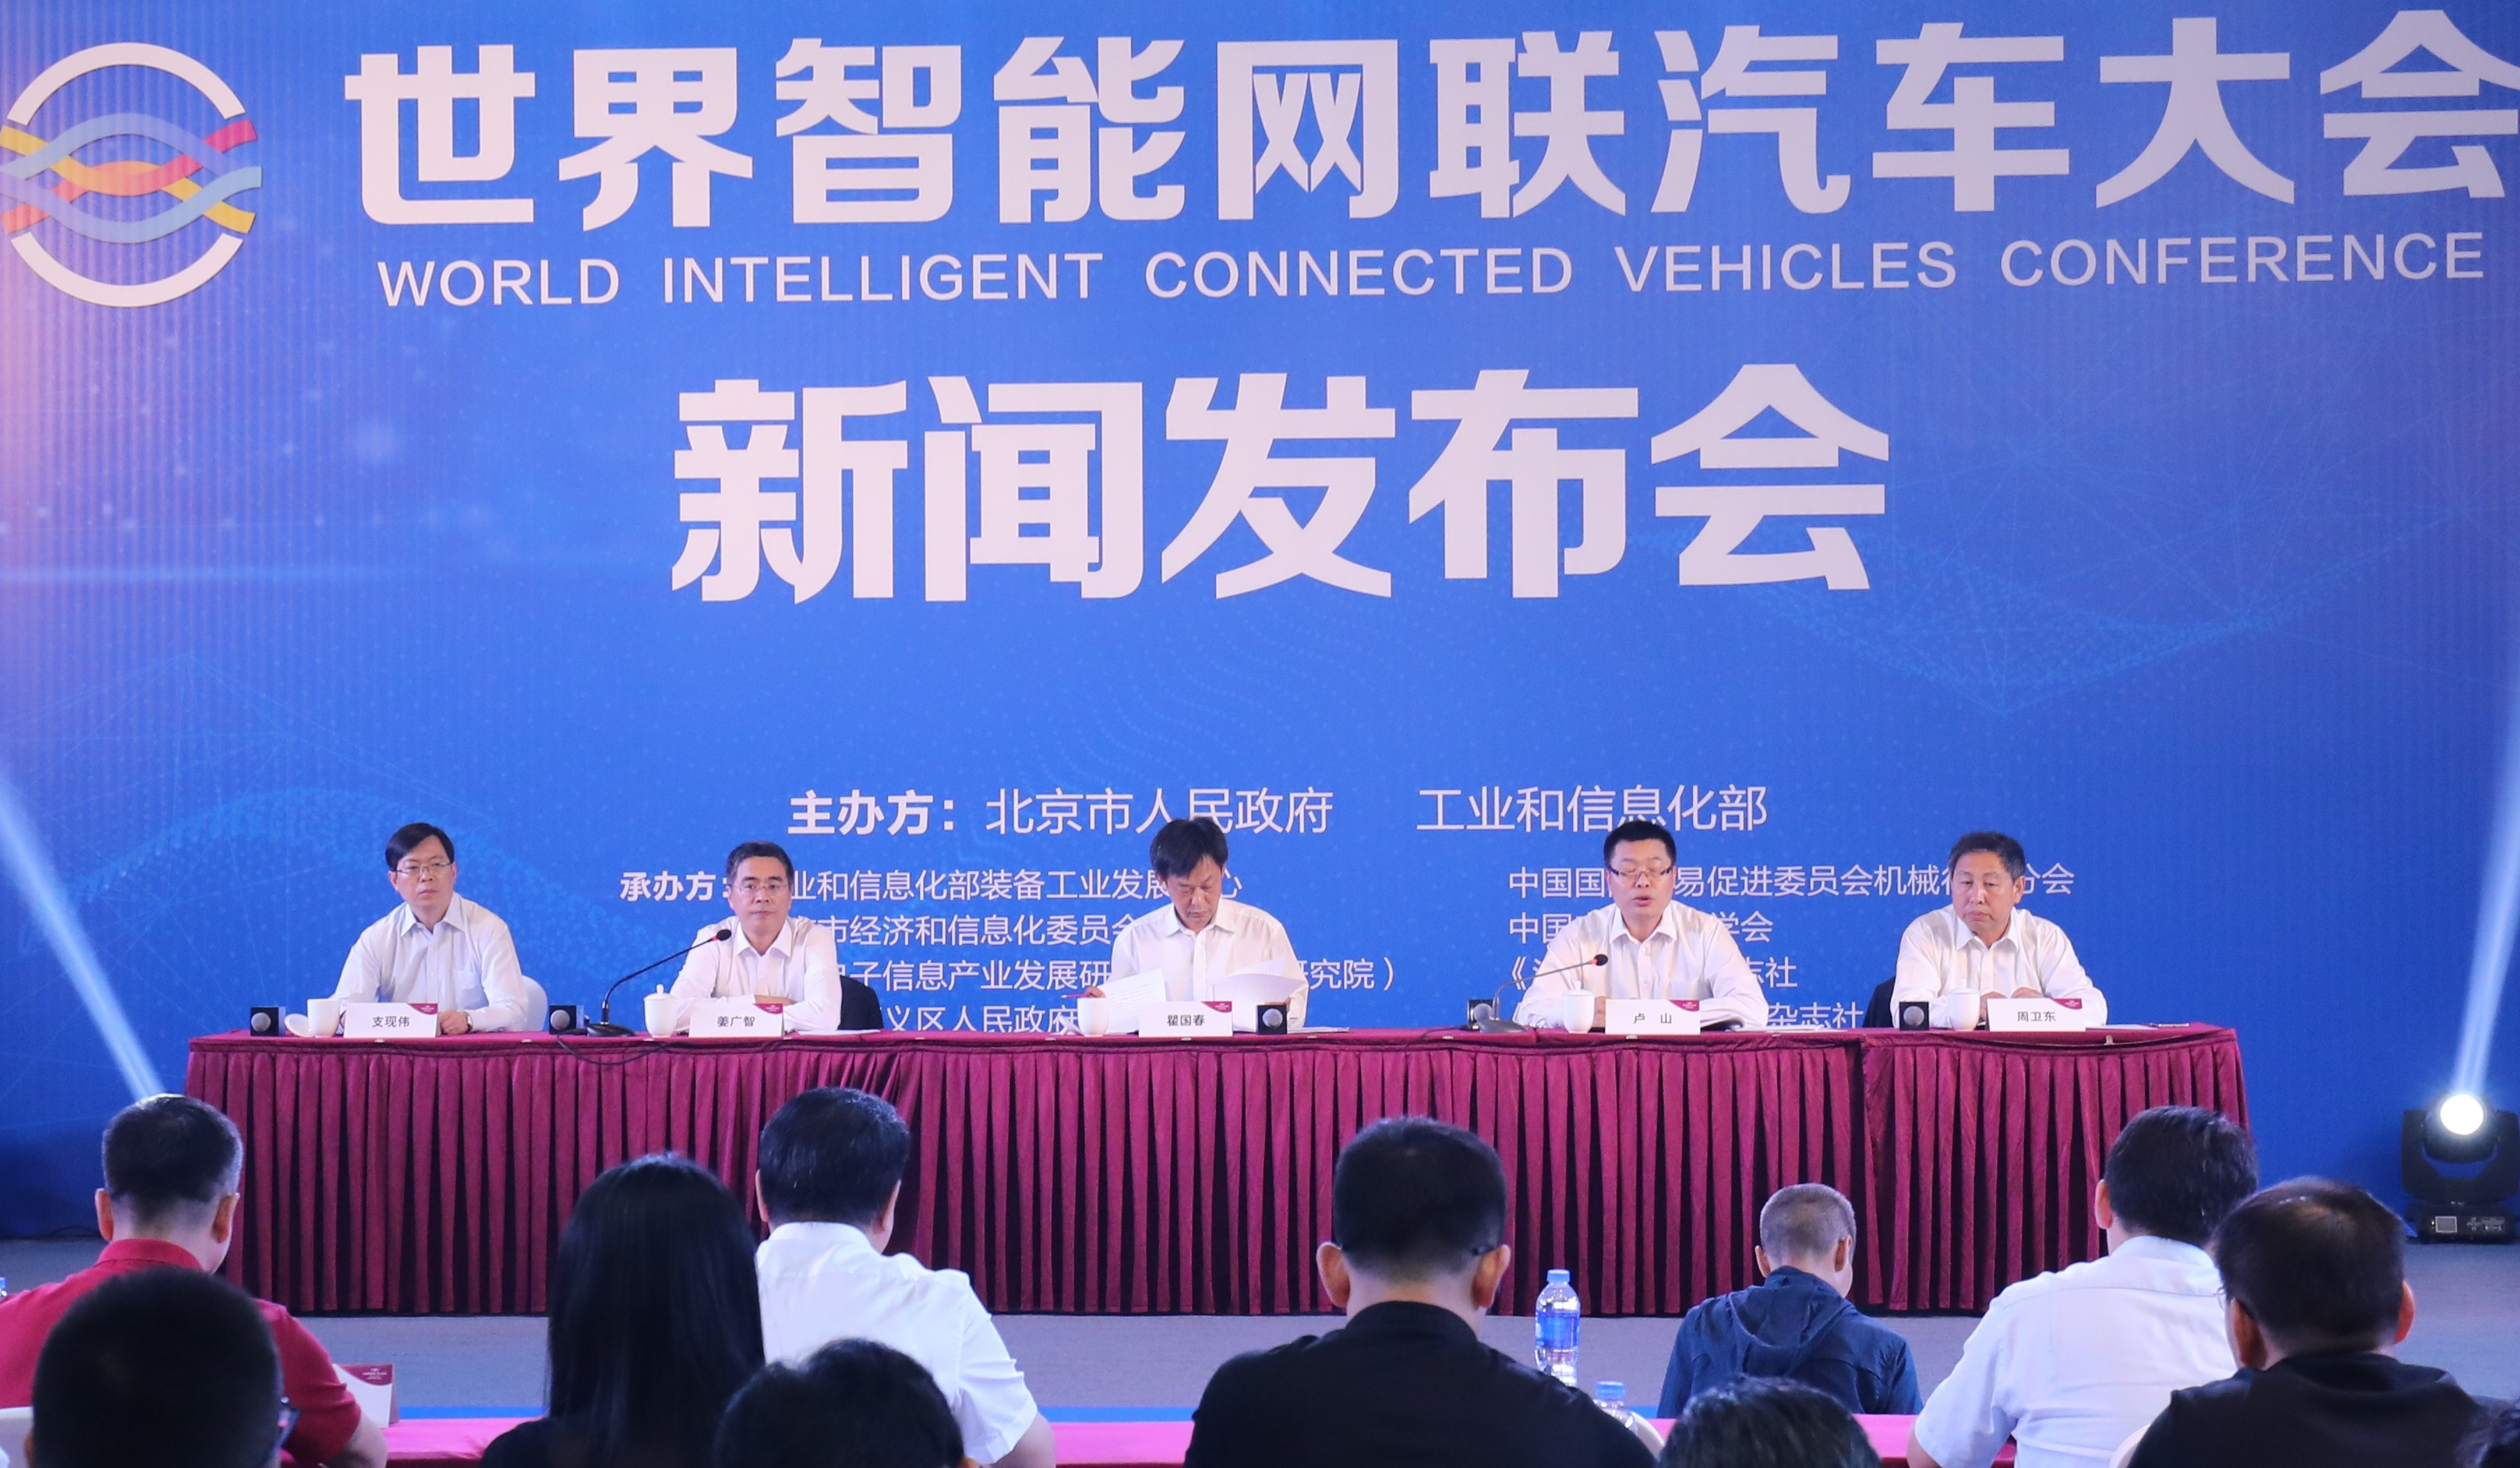 “世界智能网联汽车大会”将在京举办